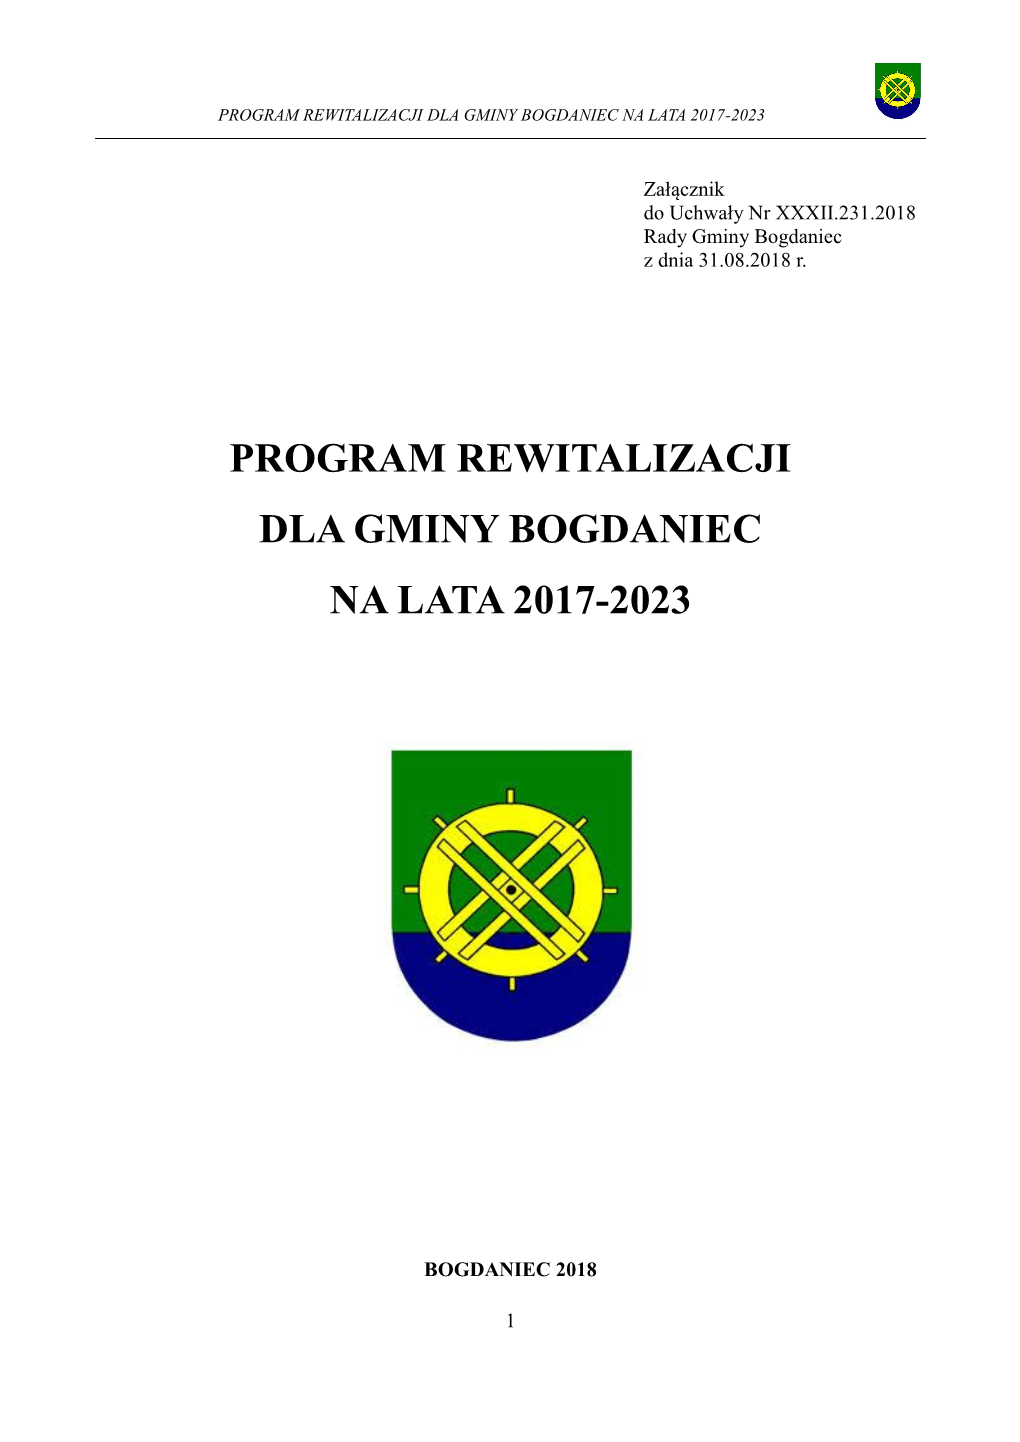 Program Rewitalizacji Dla Gminy Bogdaniec Na Lata 2017-2023